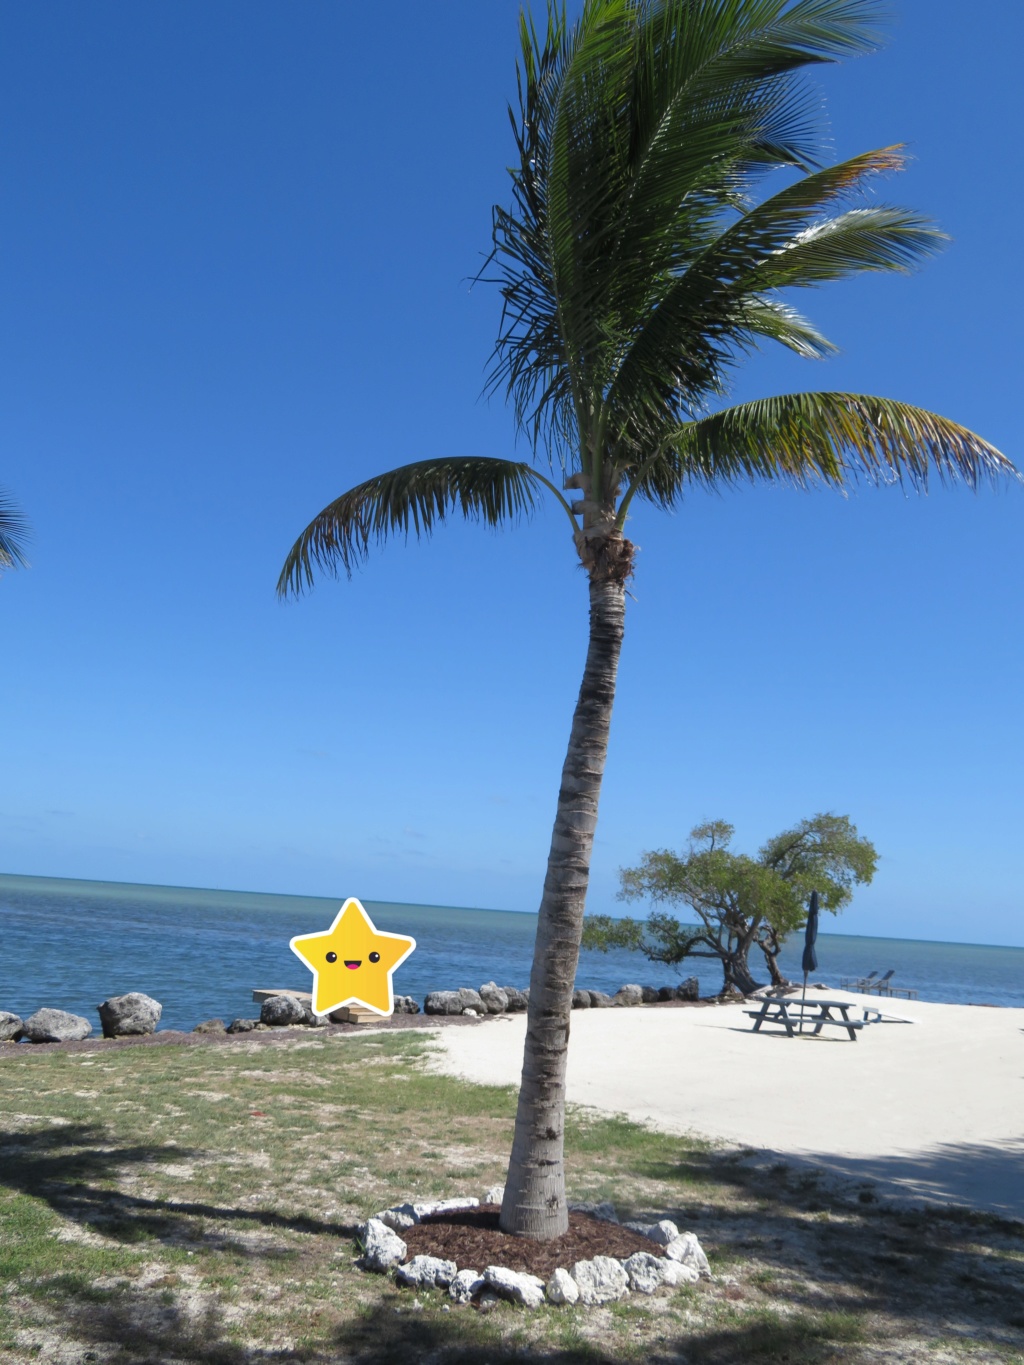 2019 - Avril 2019: Retour en Floride pour un séjour qui - cette fois - tient toutes ses promesses! (WDW-Universal-Côte Ouest-Everglades-Keys-Miami) [terminé] - Page 3 Img_3114